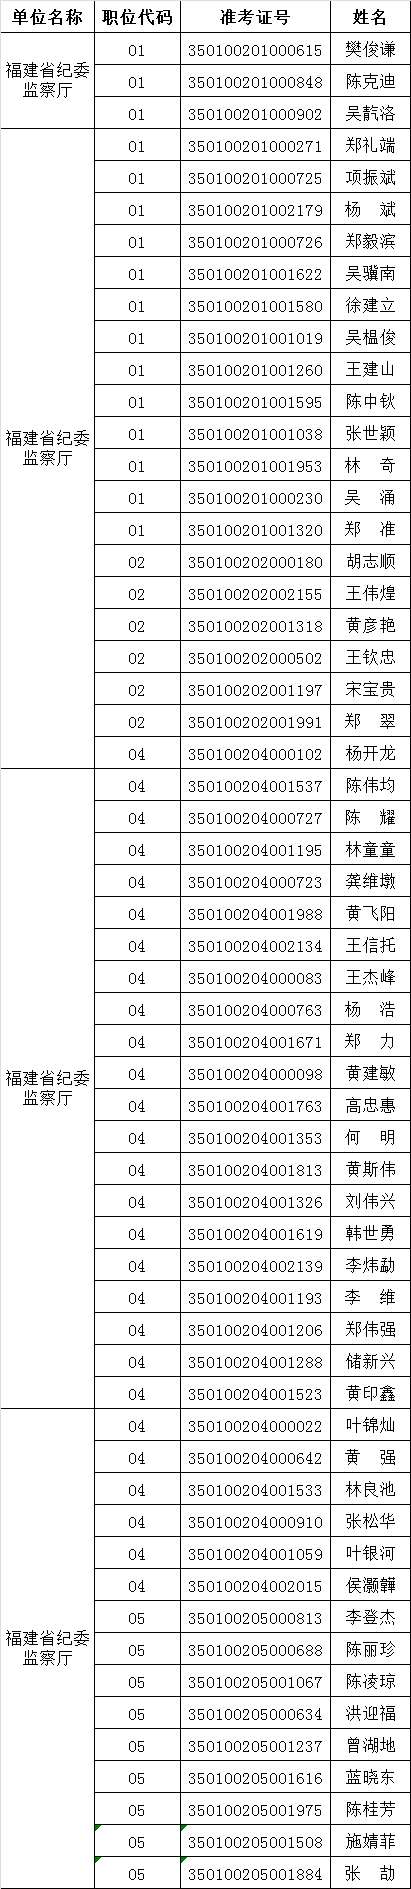 福建省纪委监察厅拟进入面试人员名单.png